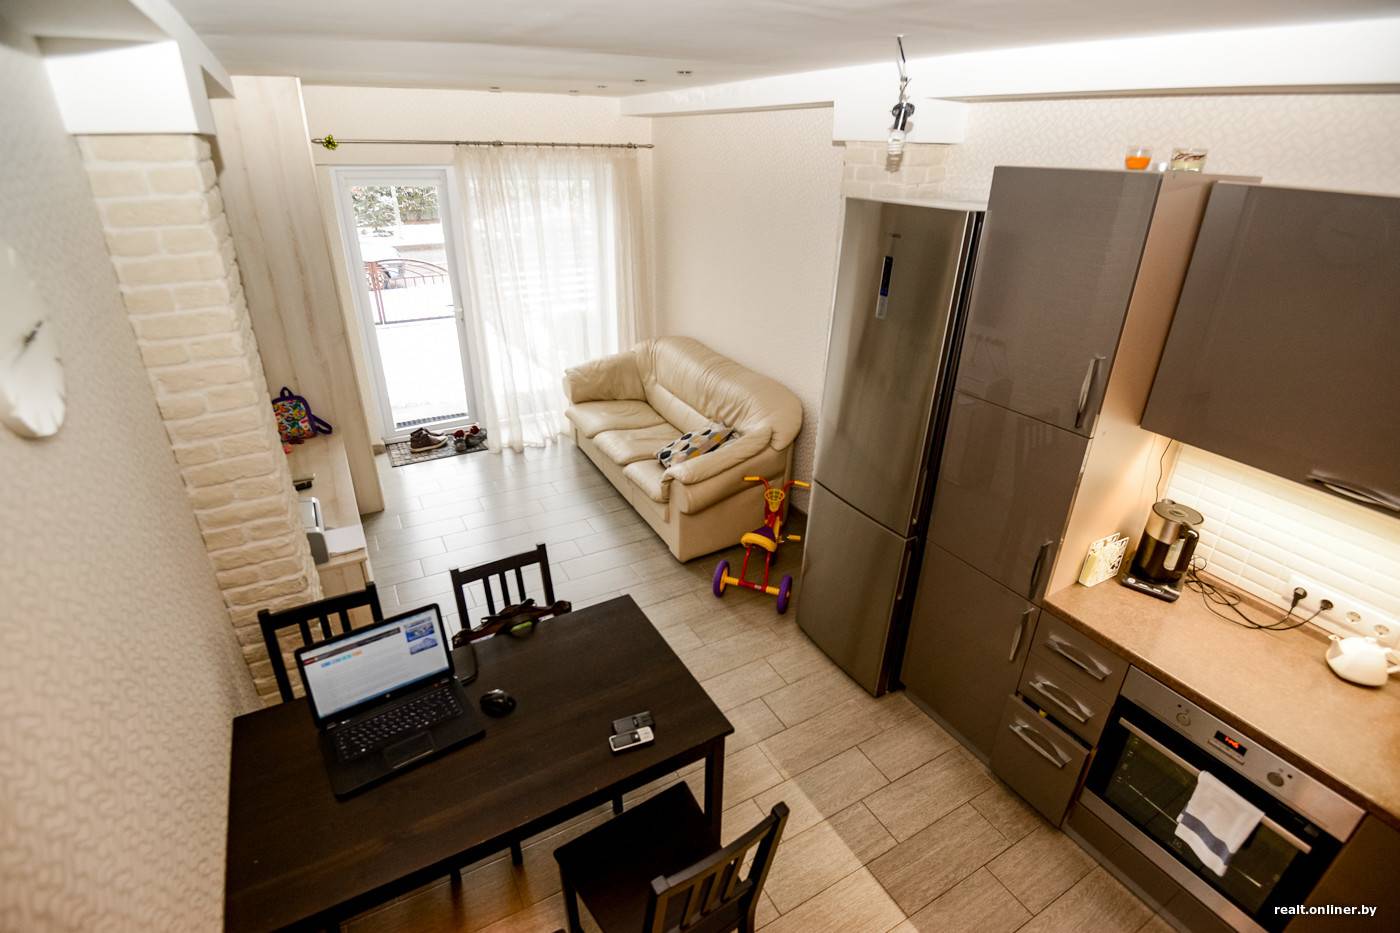 Перенос кухни в жилую комнату (51 фото) – возможности и ограничения